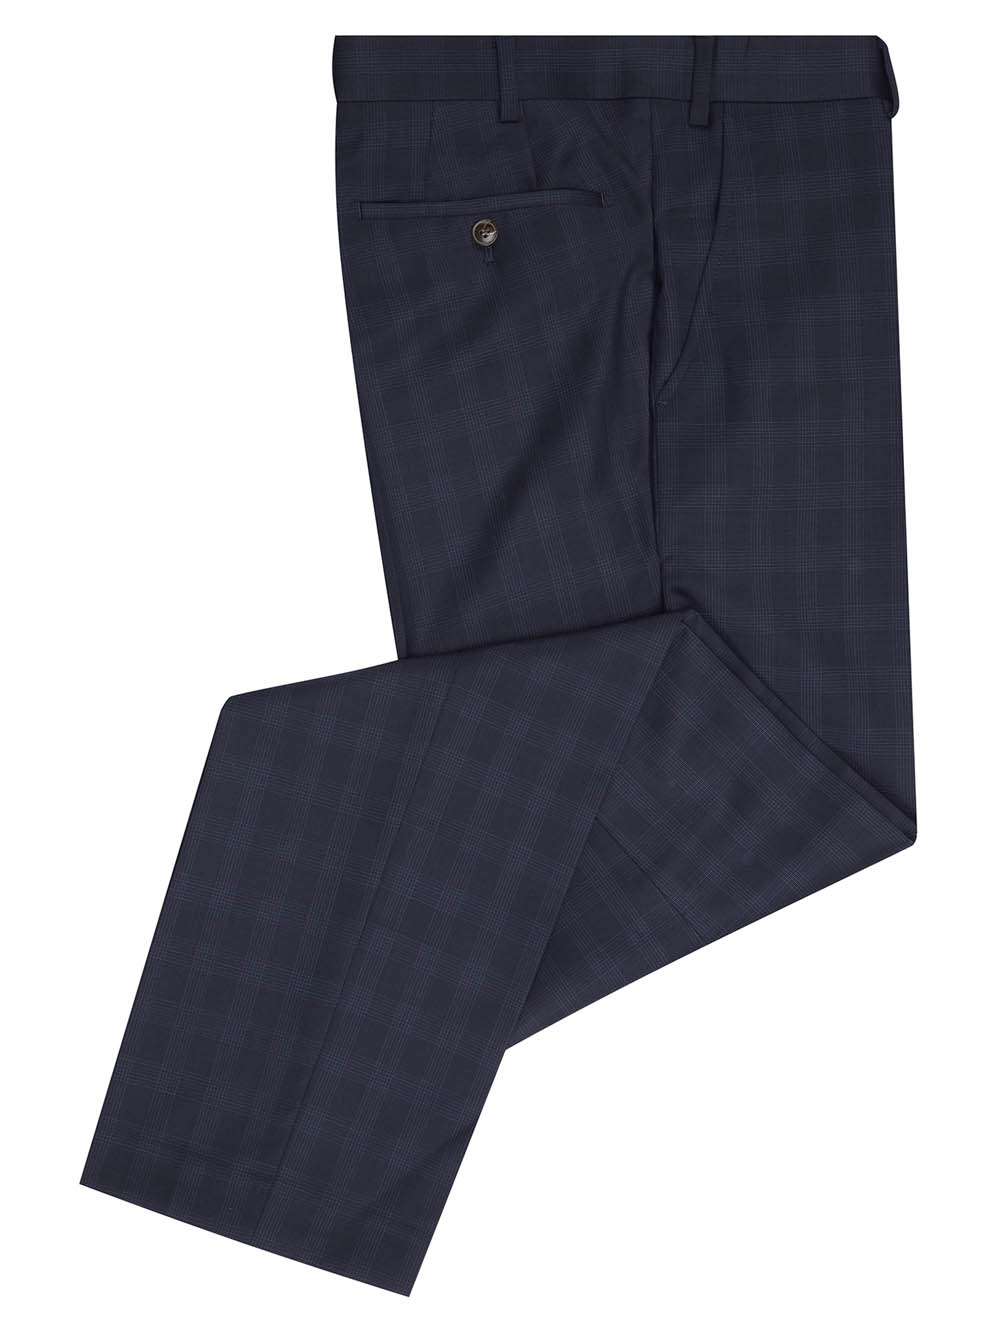 Douglas Navy Check Romelo Mix + Match Suit Trousers